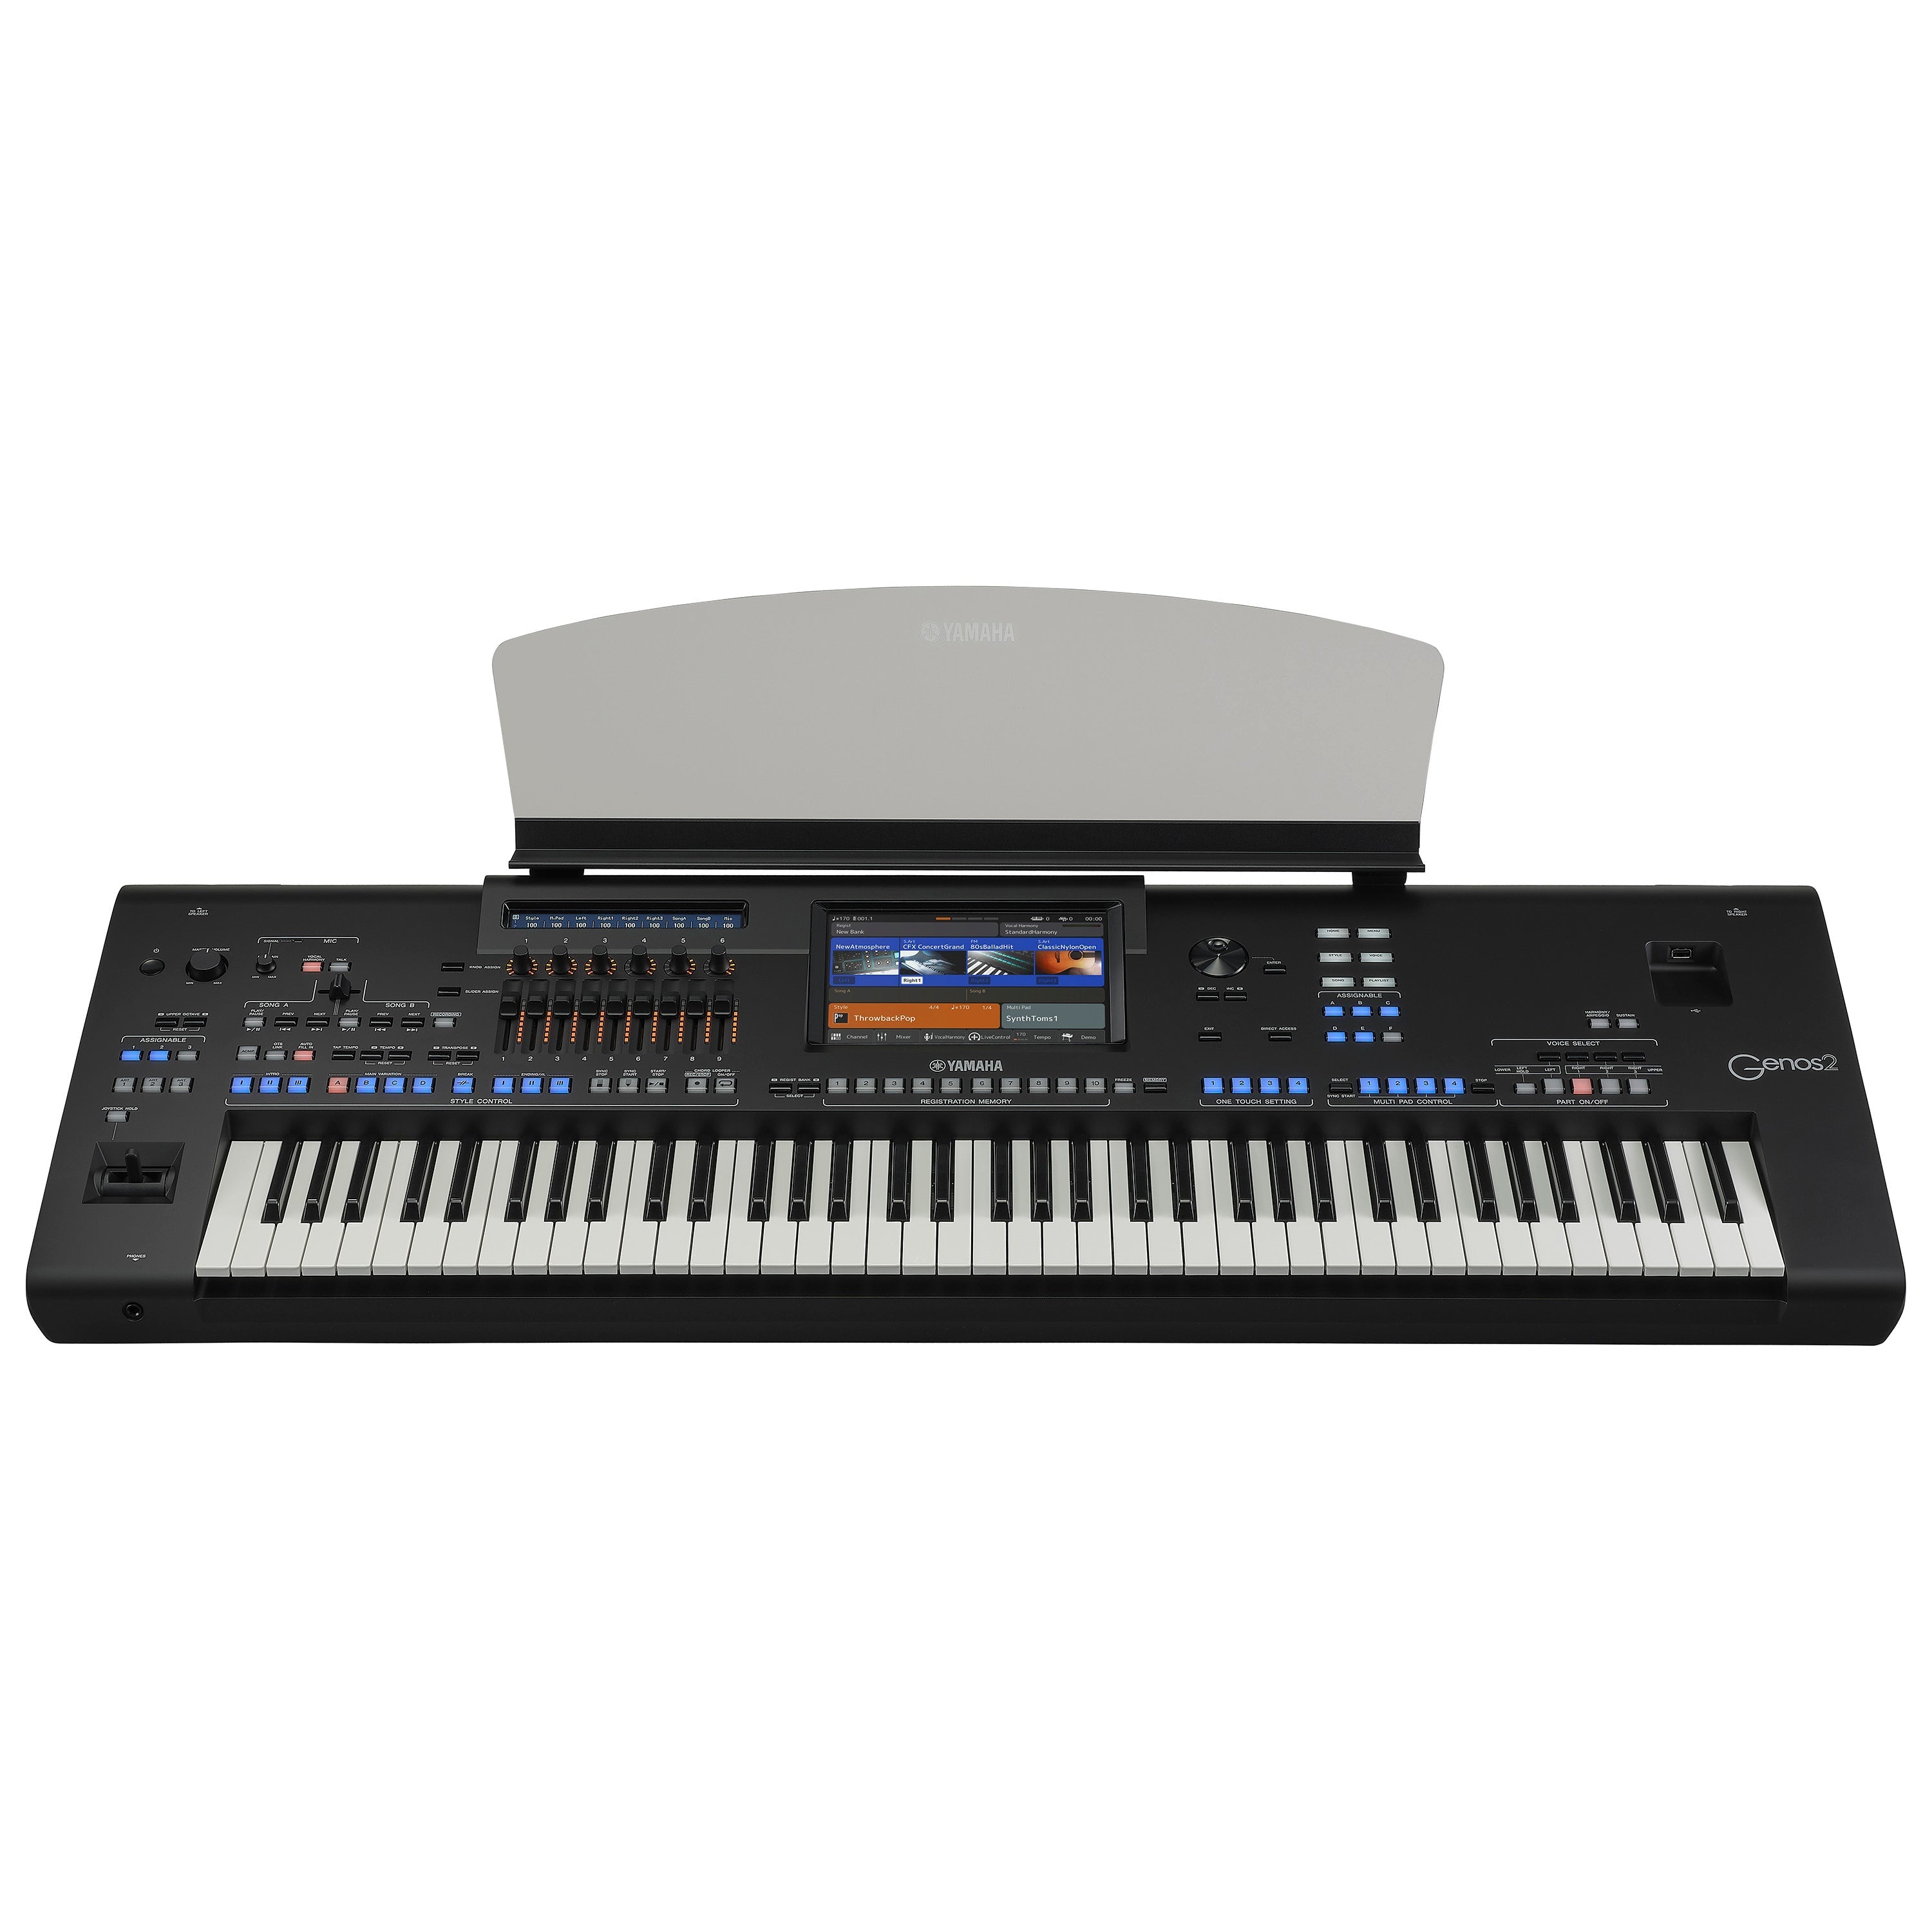 Yamaha Genos2 76-key Arranger Workstation Keyboard COMPLETE HOME BUNDLE